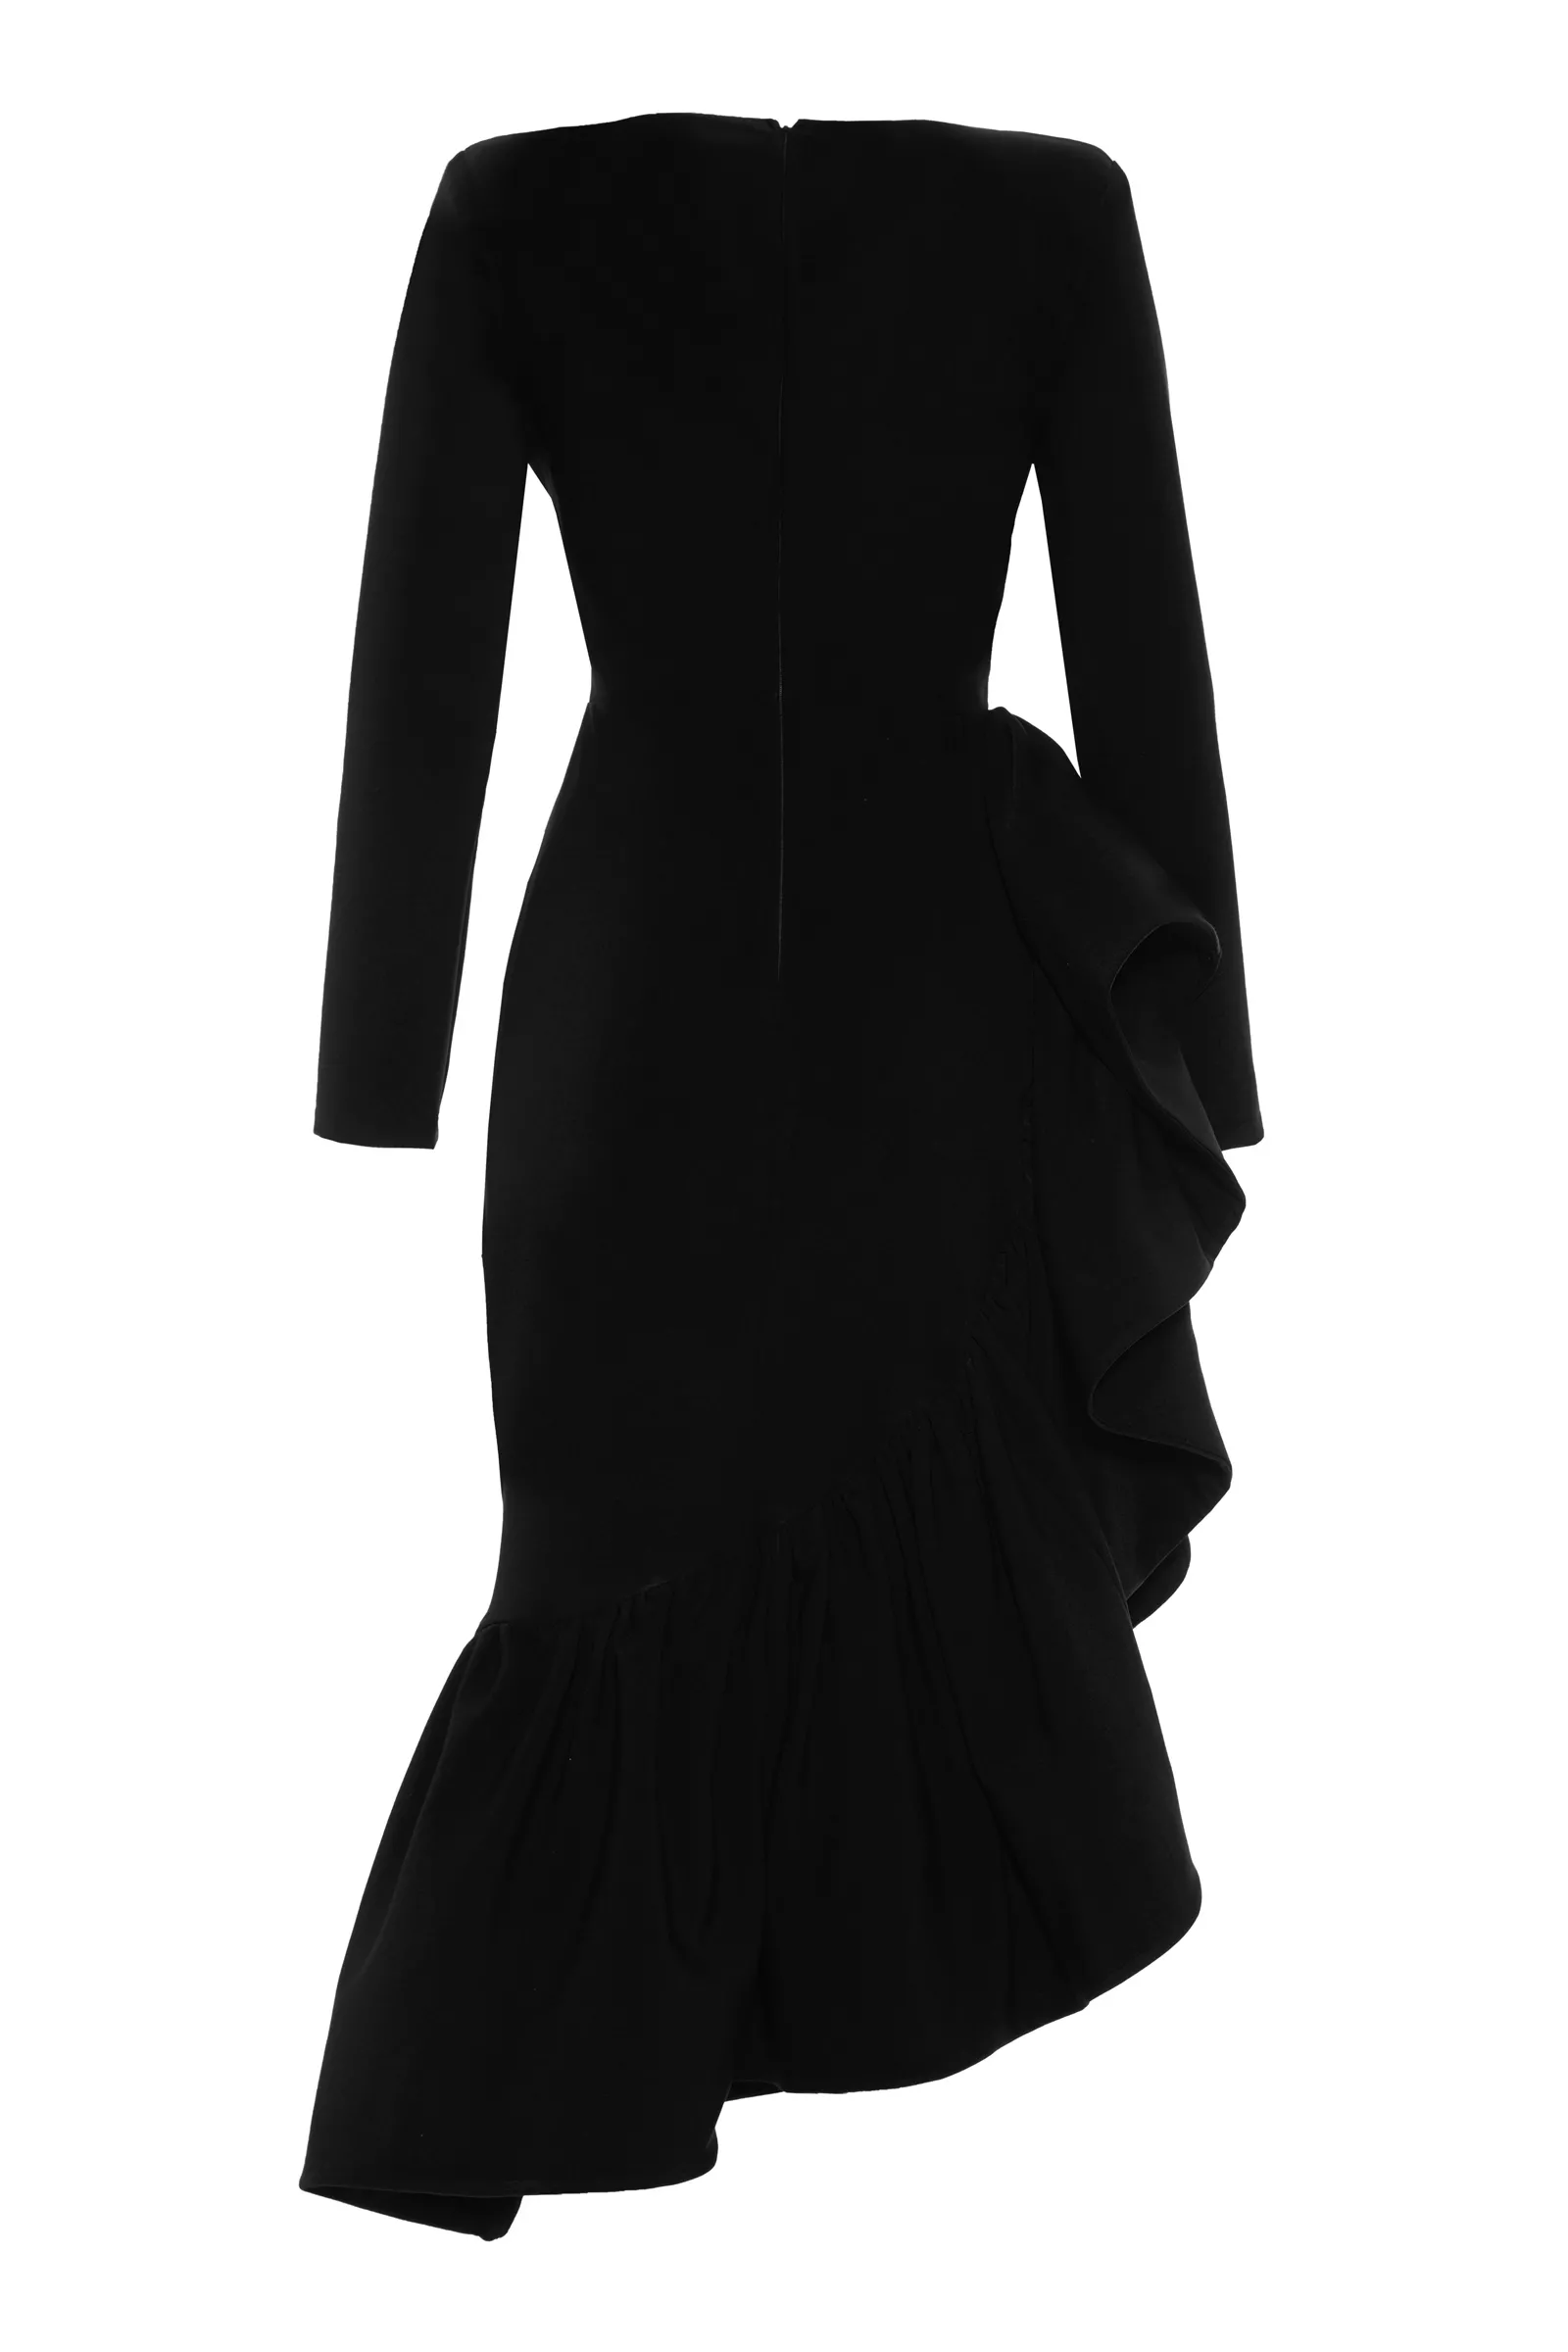 Black crepe long sleeve maxi dress